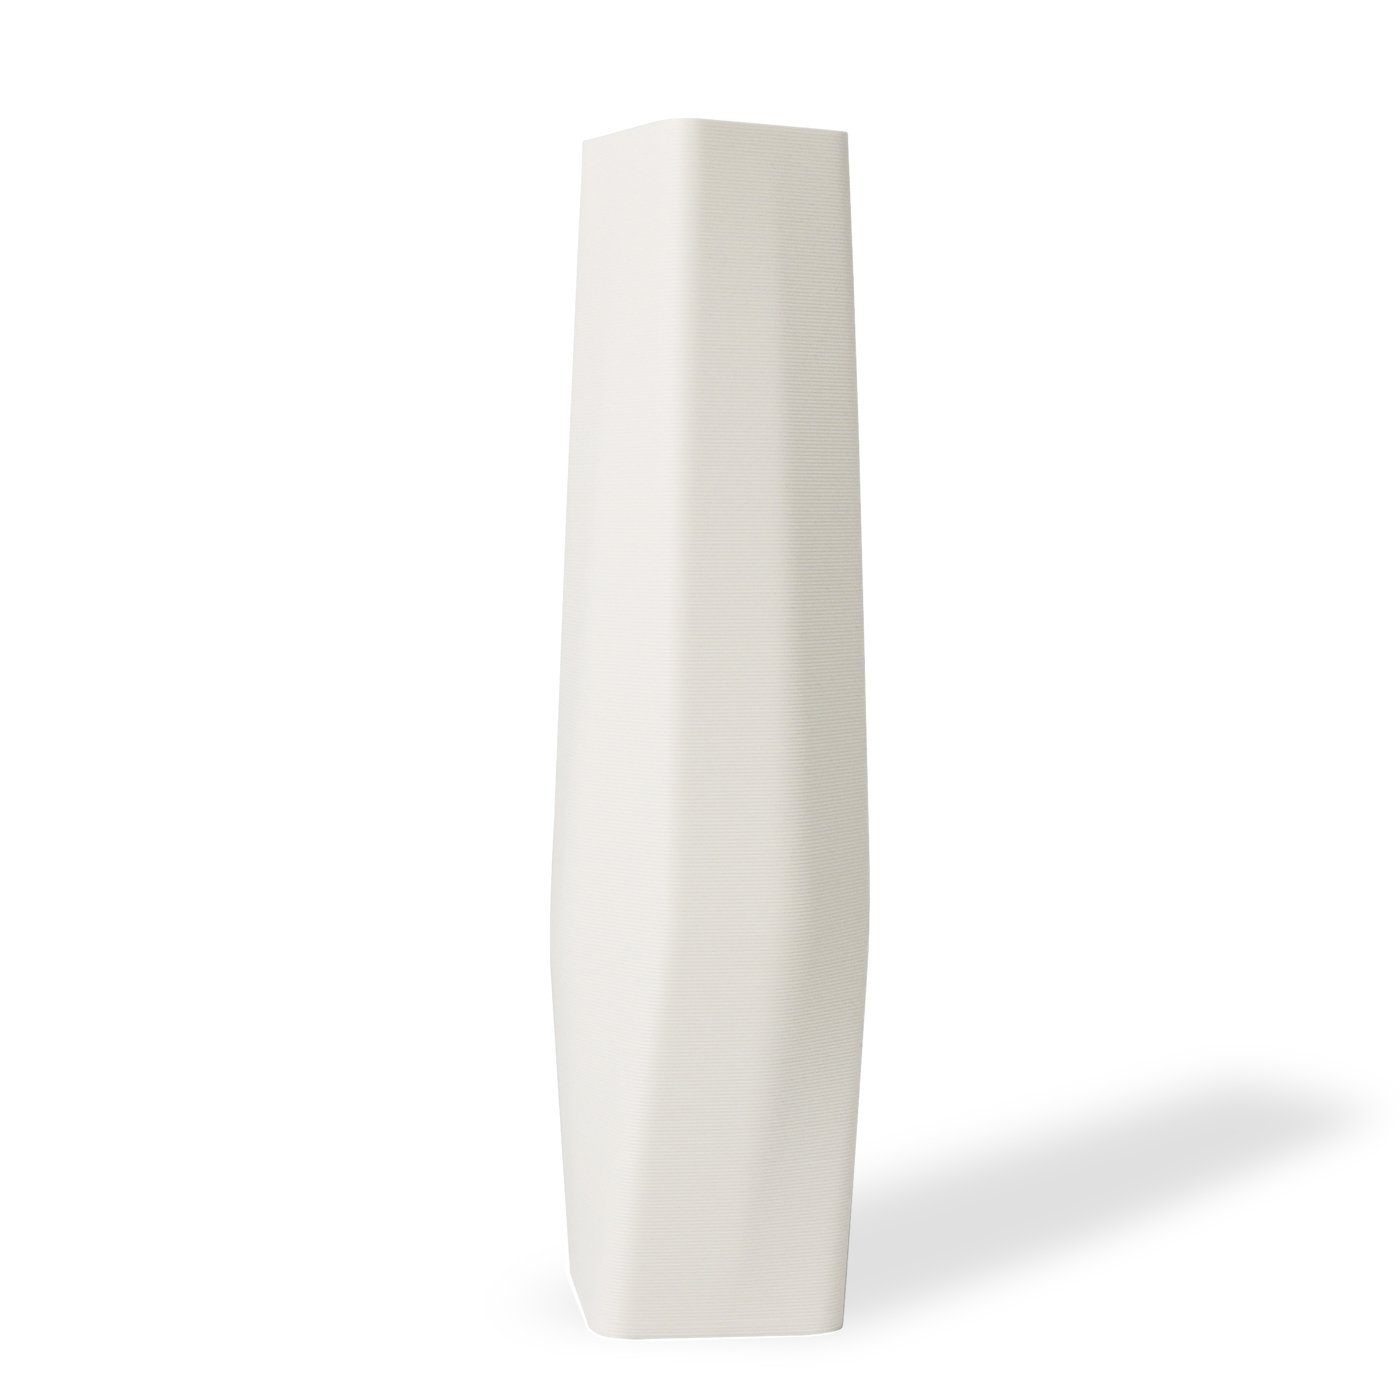 Shapes - Decorations Dekovase the vase - square (basic), 3D Vasen, viele Farben, 100% 3D-Druck (Einzelmodell, 1 Vase), Wasserdicht; Leichte Struktur innerhalb des Materials (Rillung) Weiß